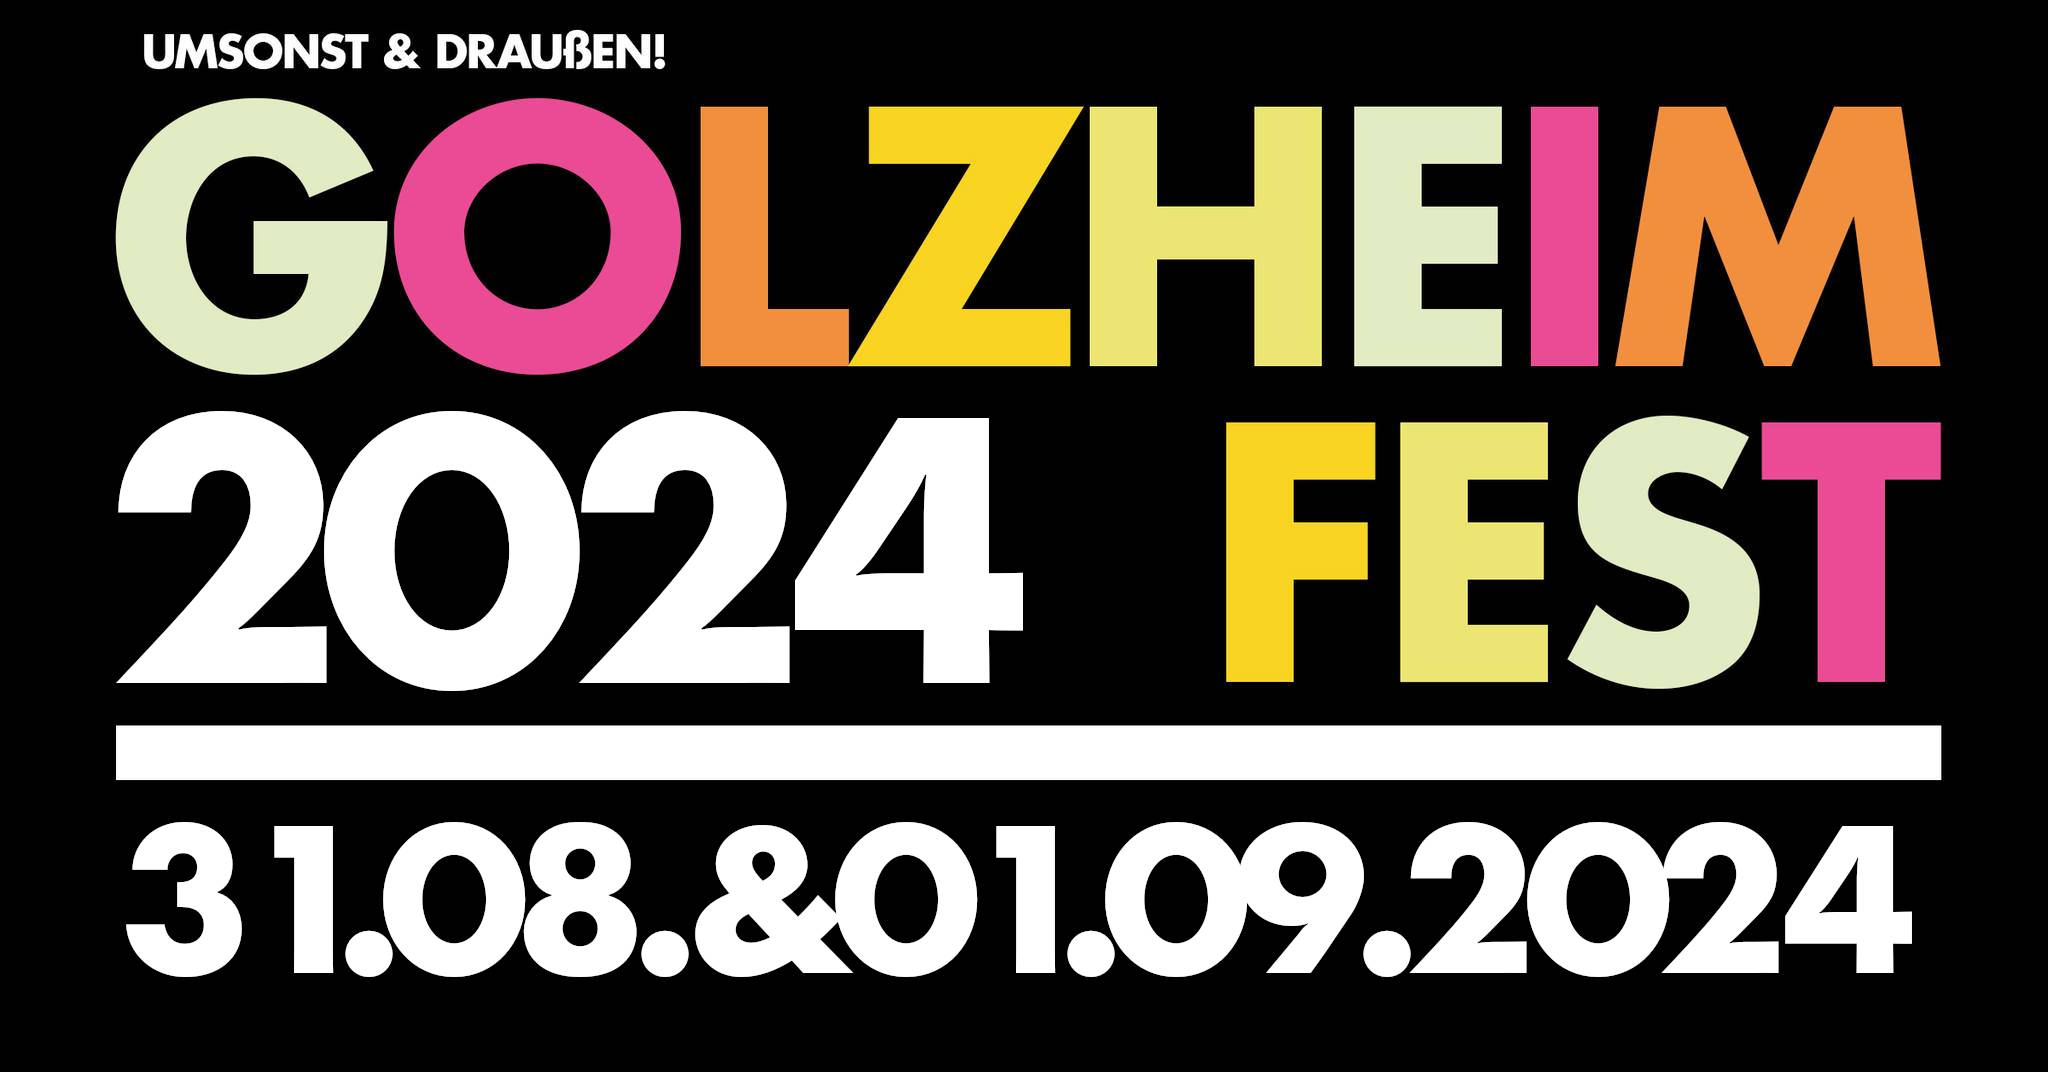 Golzheim Fest 2024, Robert-Lehr-Ufer, Düsseldorf. 31. AUG. UM 14:00 – 01. SEP. UM 18:00